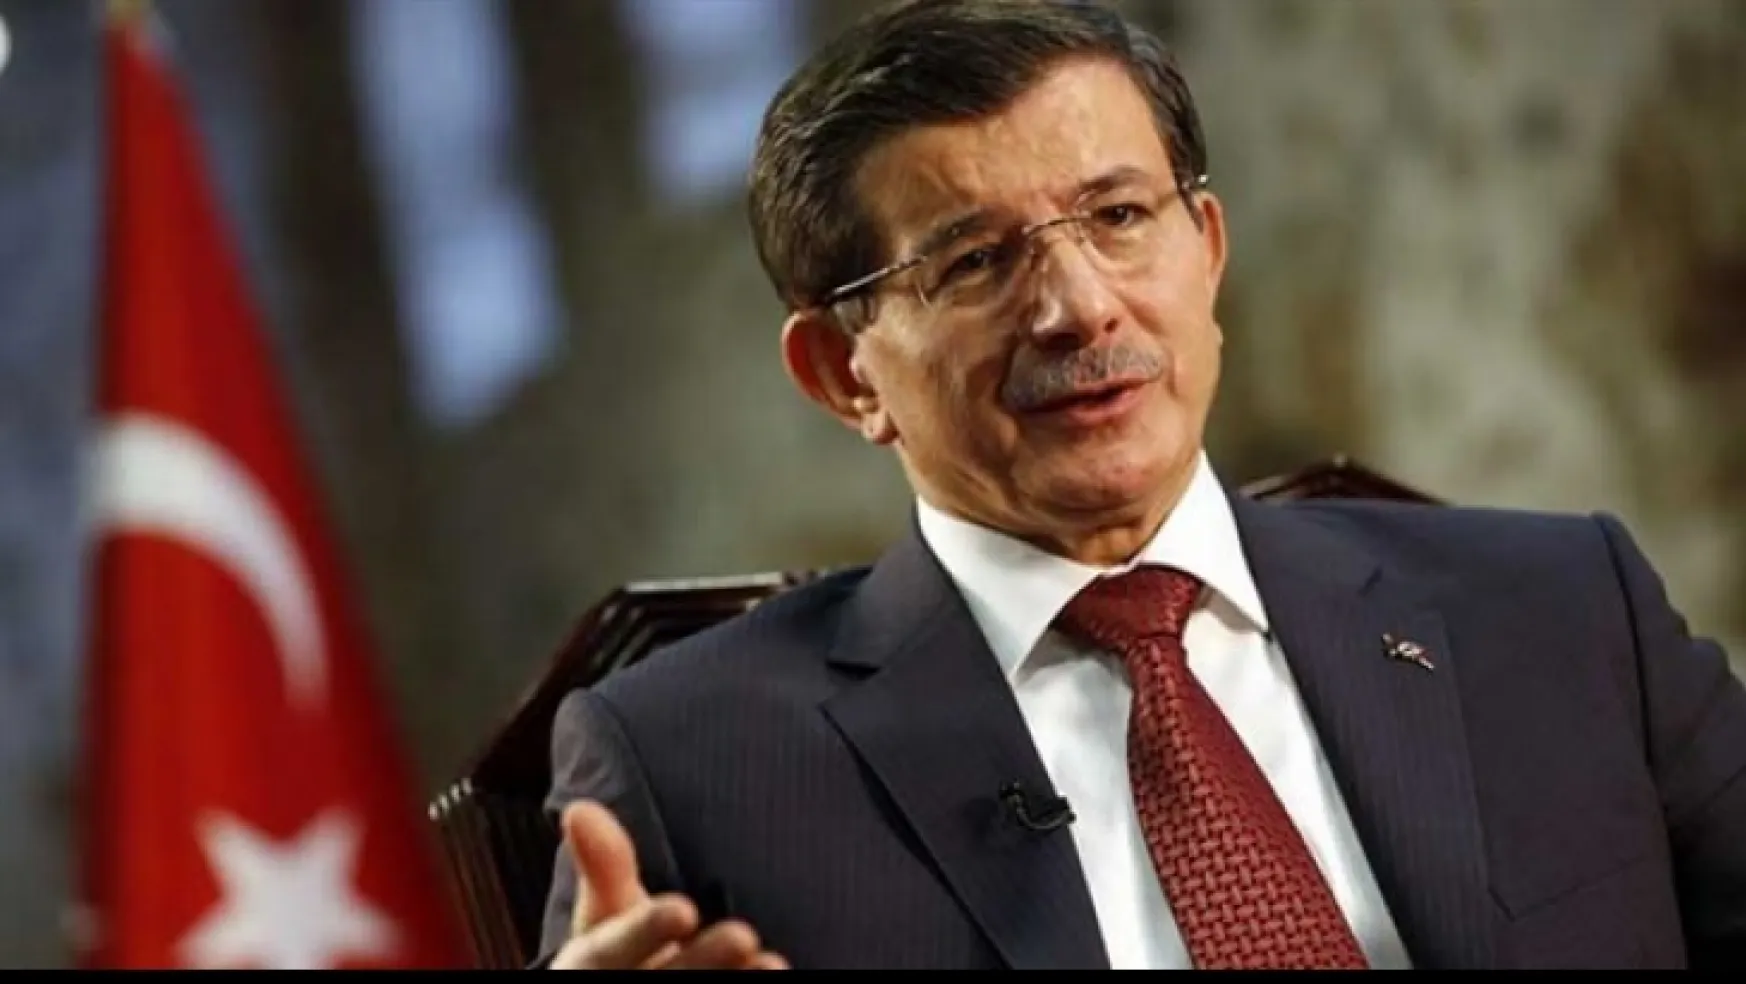 Davutoğlu, 'Suriye konusunda pişman değilim'